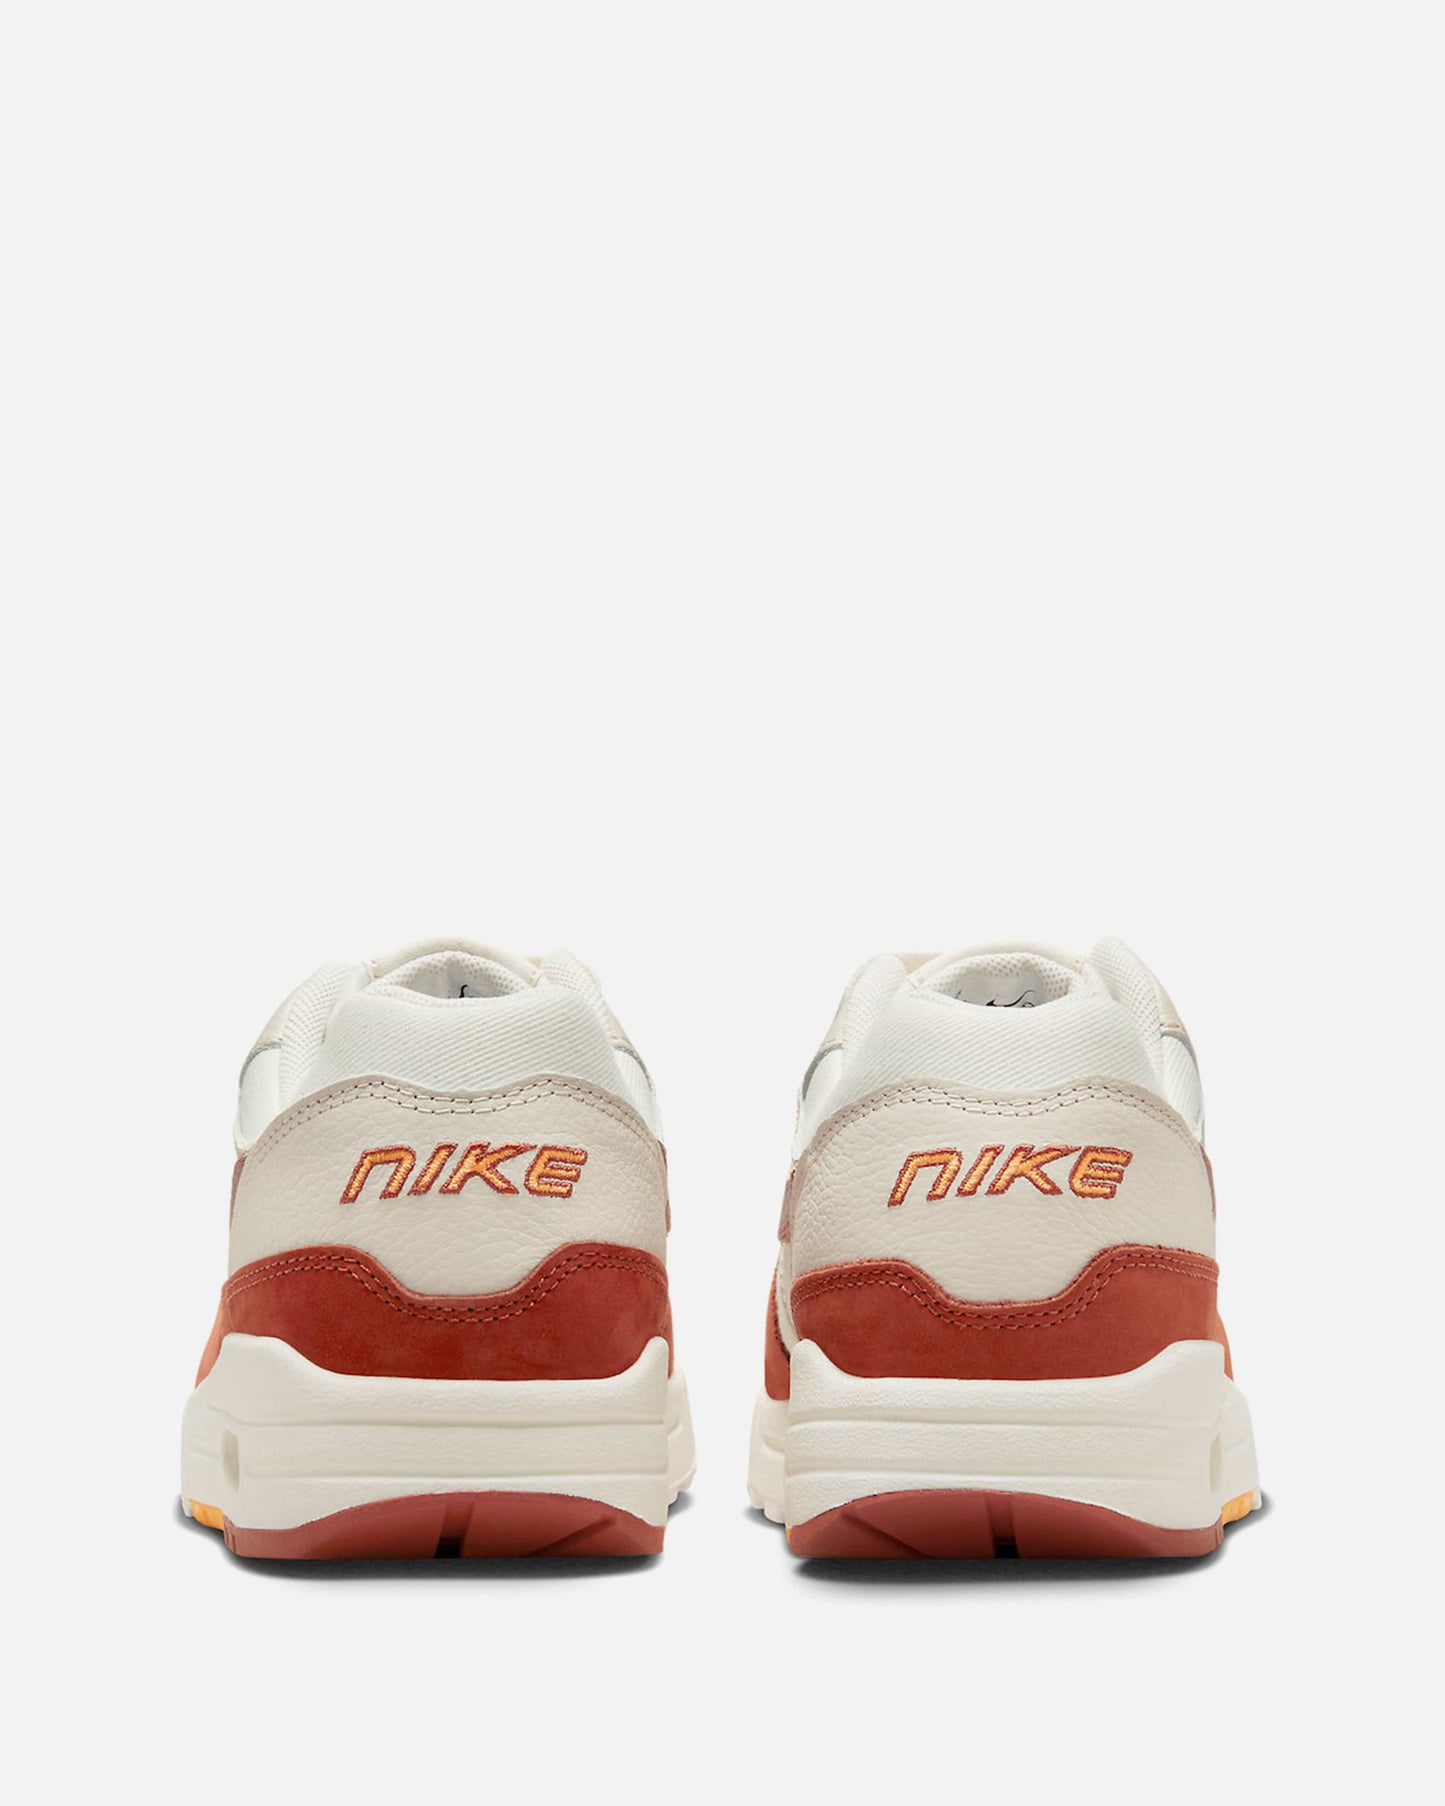 Nike Women's Shoes Air Max 1 LX 'Sail/Rugged Orange'